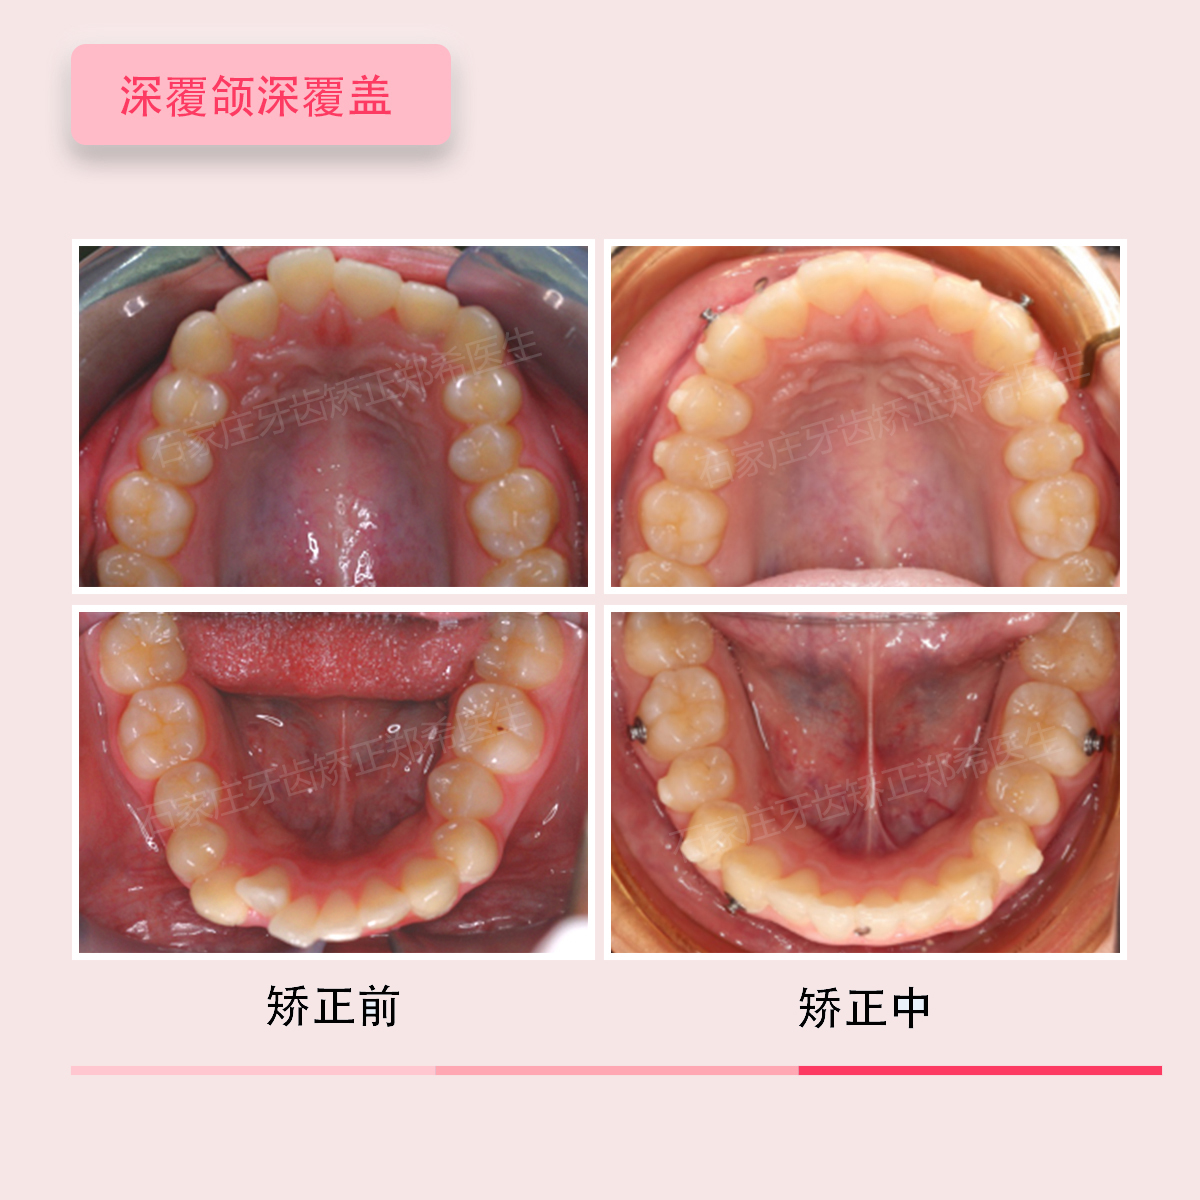 石家庄牙齿矫正郑希医生案例集:门牙对刃,深覆盖,深覆颌深覆盖的正畸